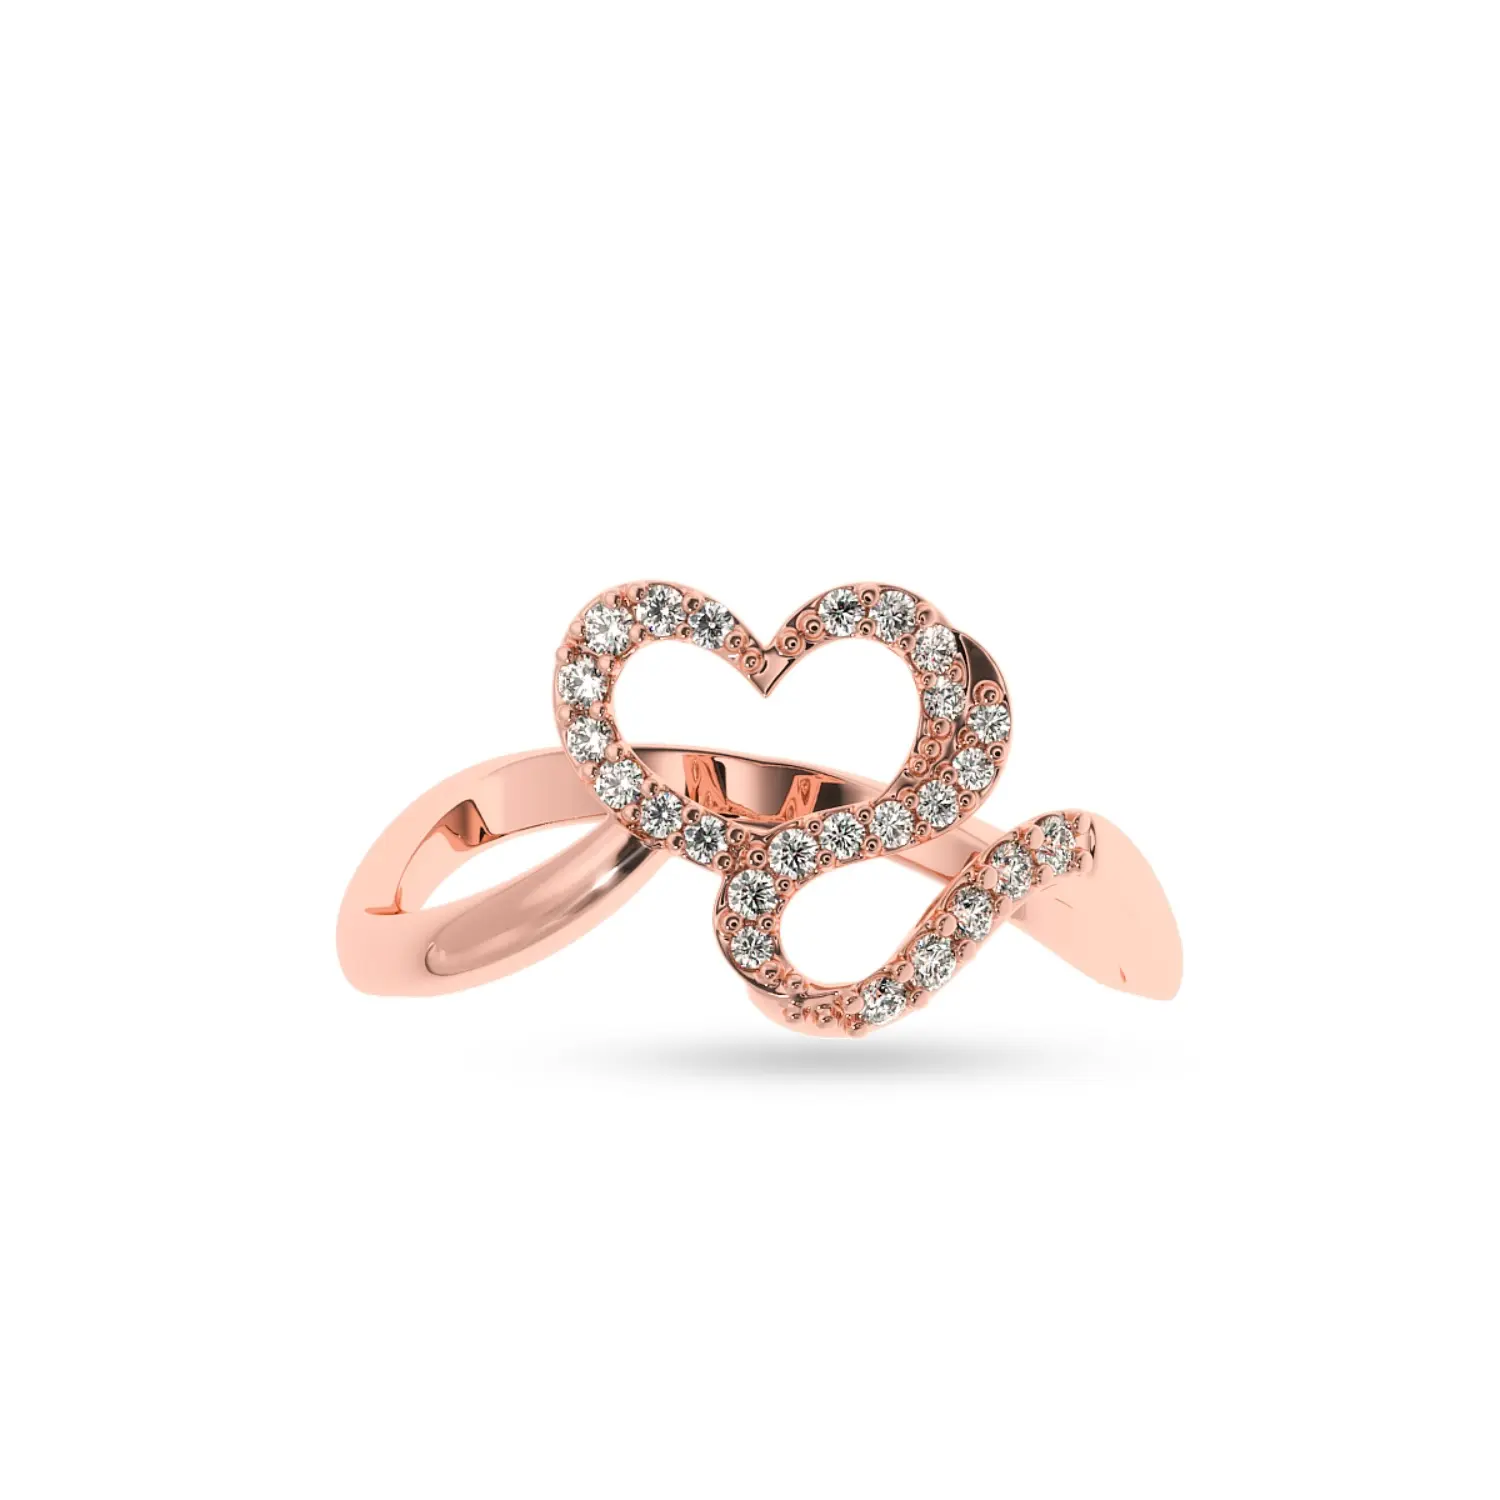 Natural Diamond Ring Weihnachts-und Neujahrs geschenk zum Großhandels preis Neue Designer-Kollektion von Sale Super September Ring